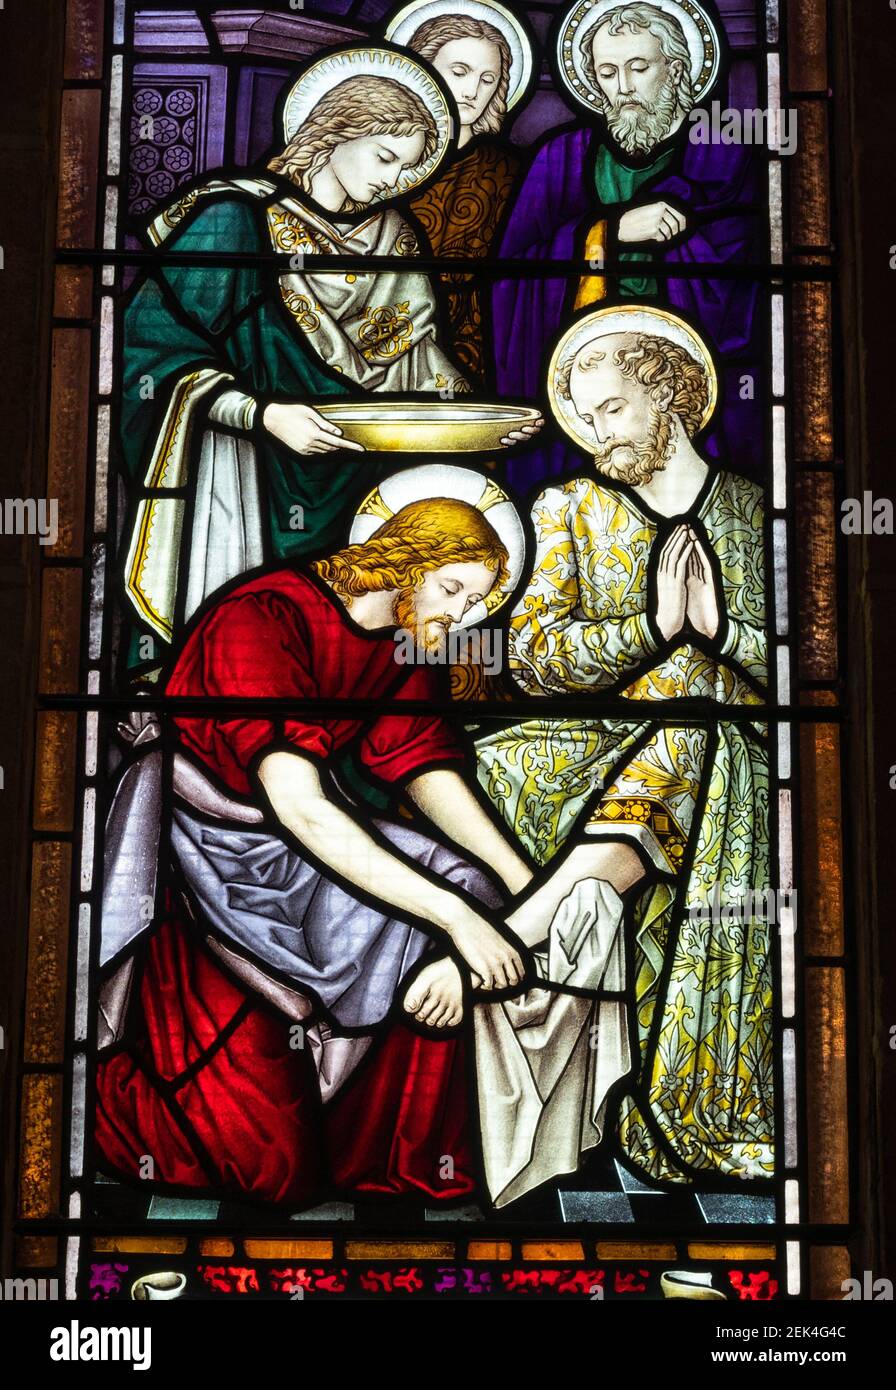 Détail d'un vitrail dans la cathédrale St George, la principale église anglicane de la ville de Perth, en Australie occidentale. Banque D'Images